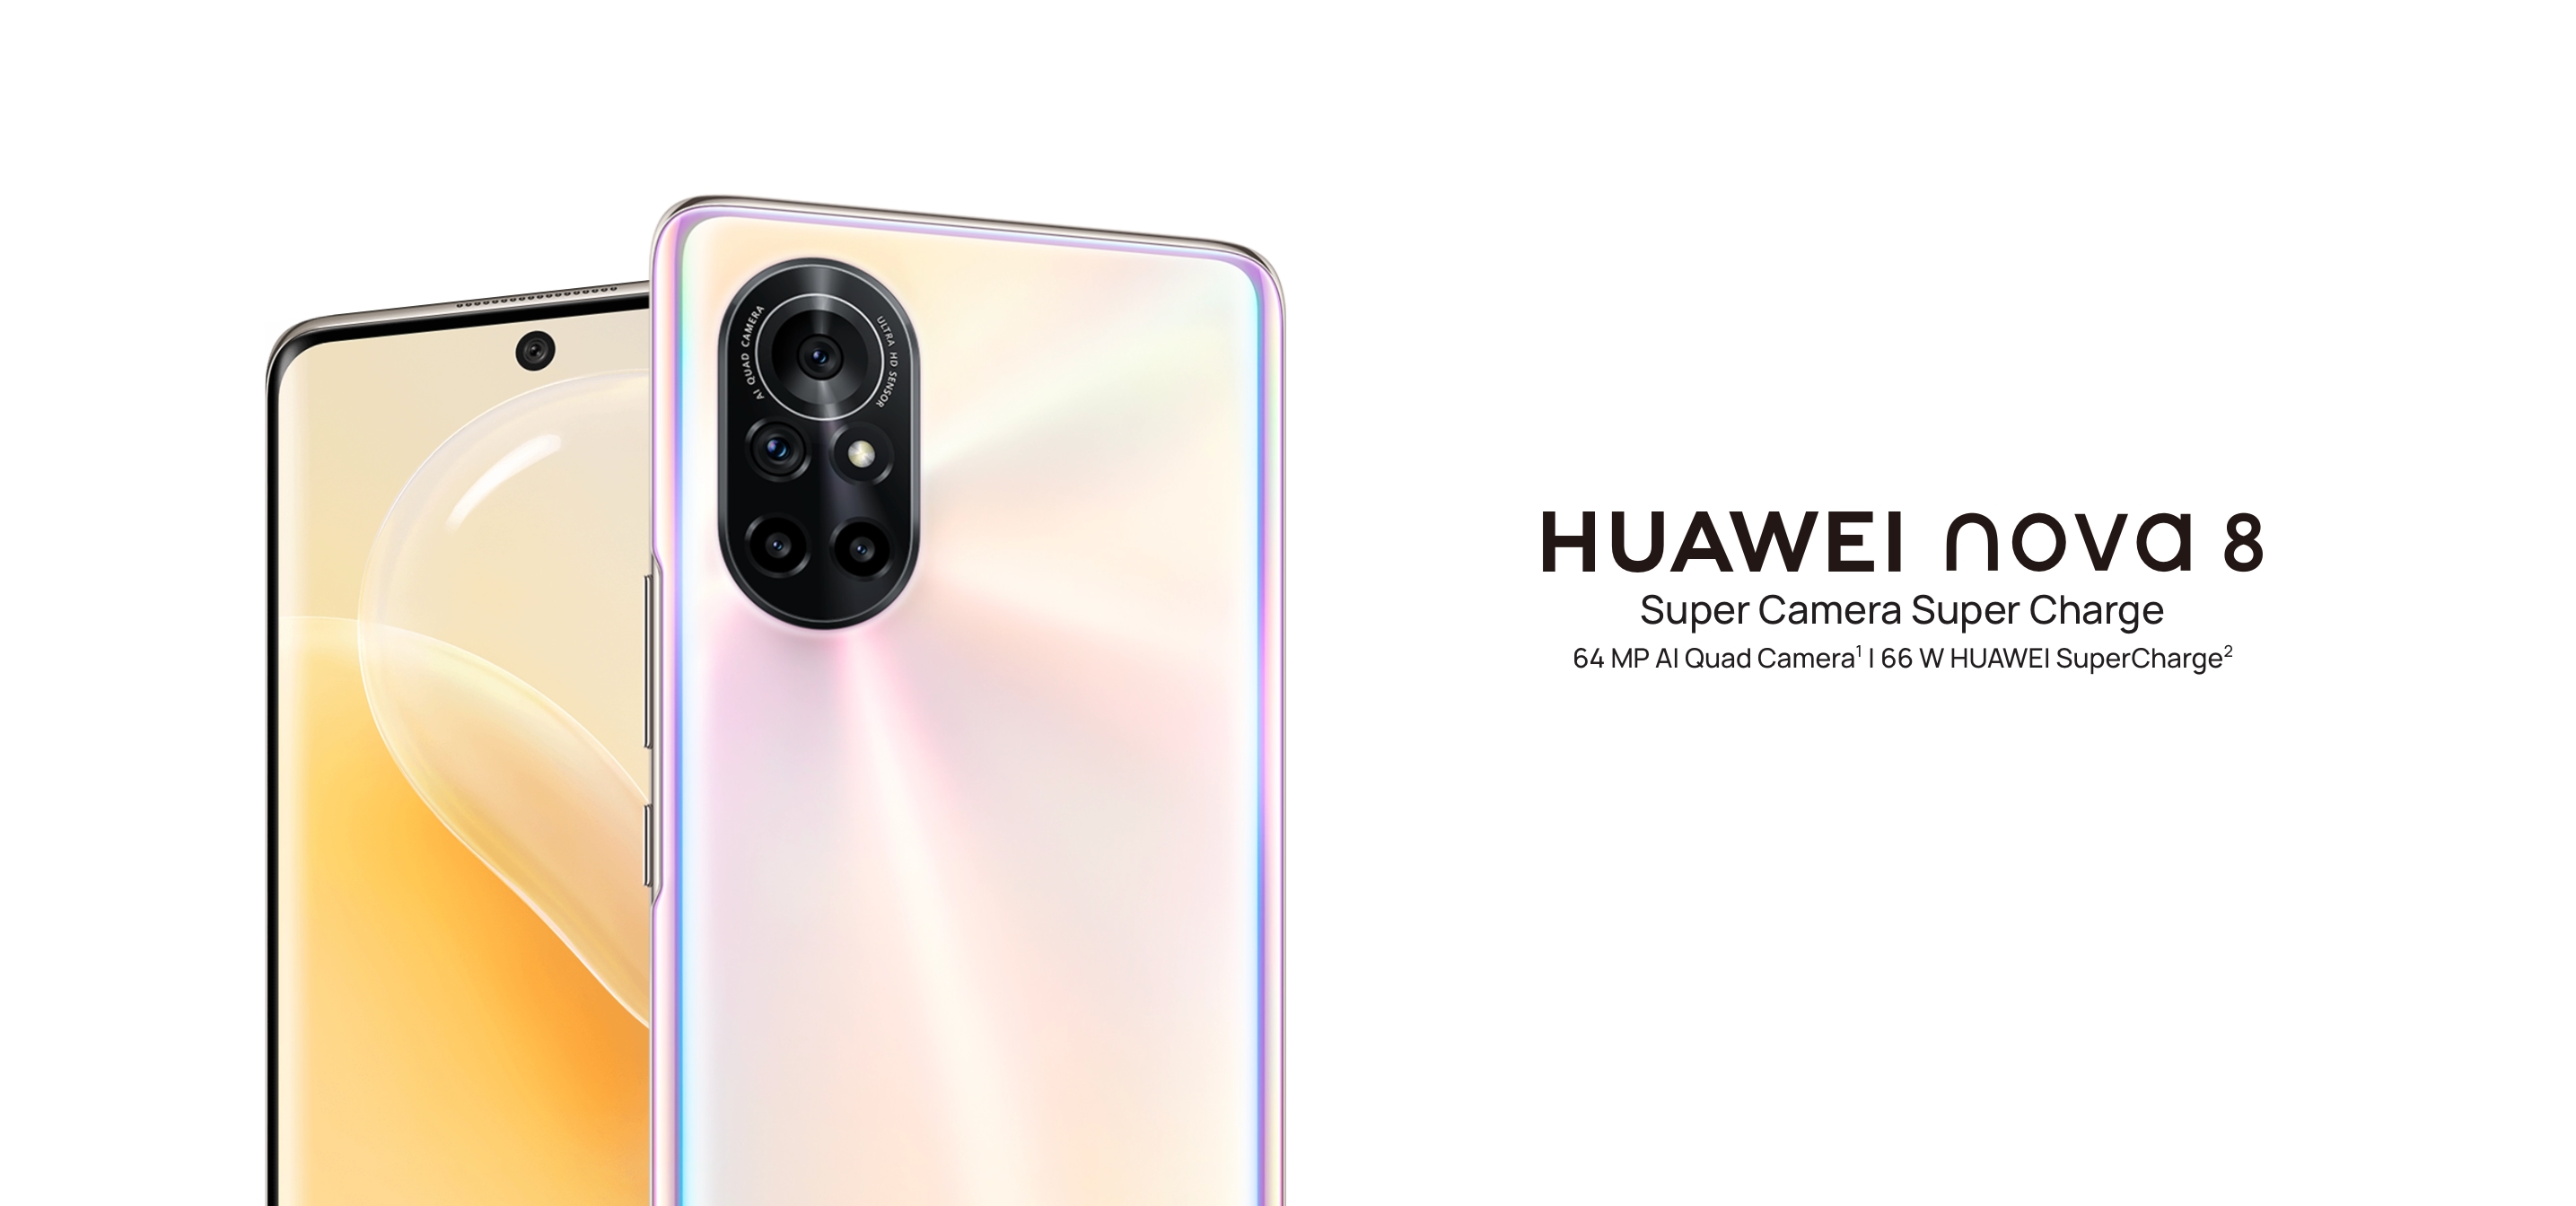 Huawei 8 became the company's first smartphone to get EMUI 12 gagadget.com